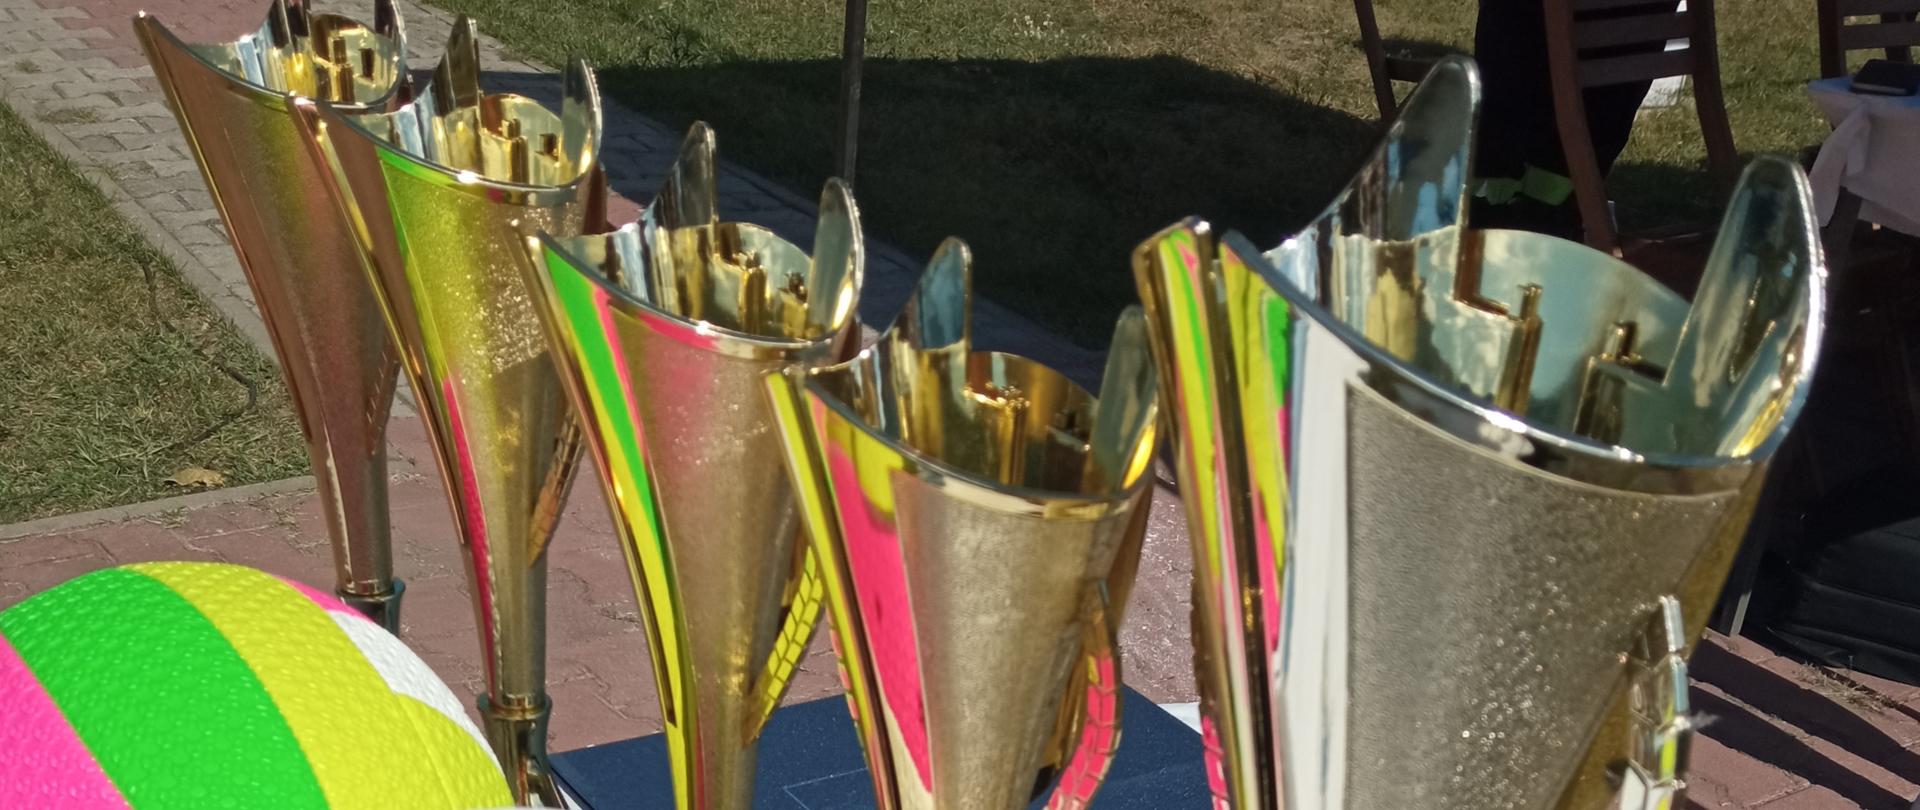 Na zdjęciu widać nagrody, które mają otrzymać zwycięzcy zawodów. Na stoliku przykrytym białym obrusem stoi 5 pucharów koloru złotego oraz torby papierowe z upominkami. 